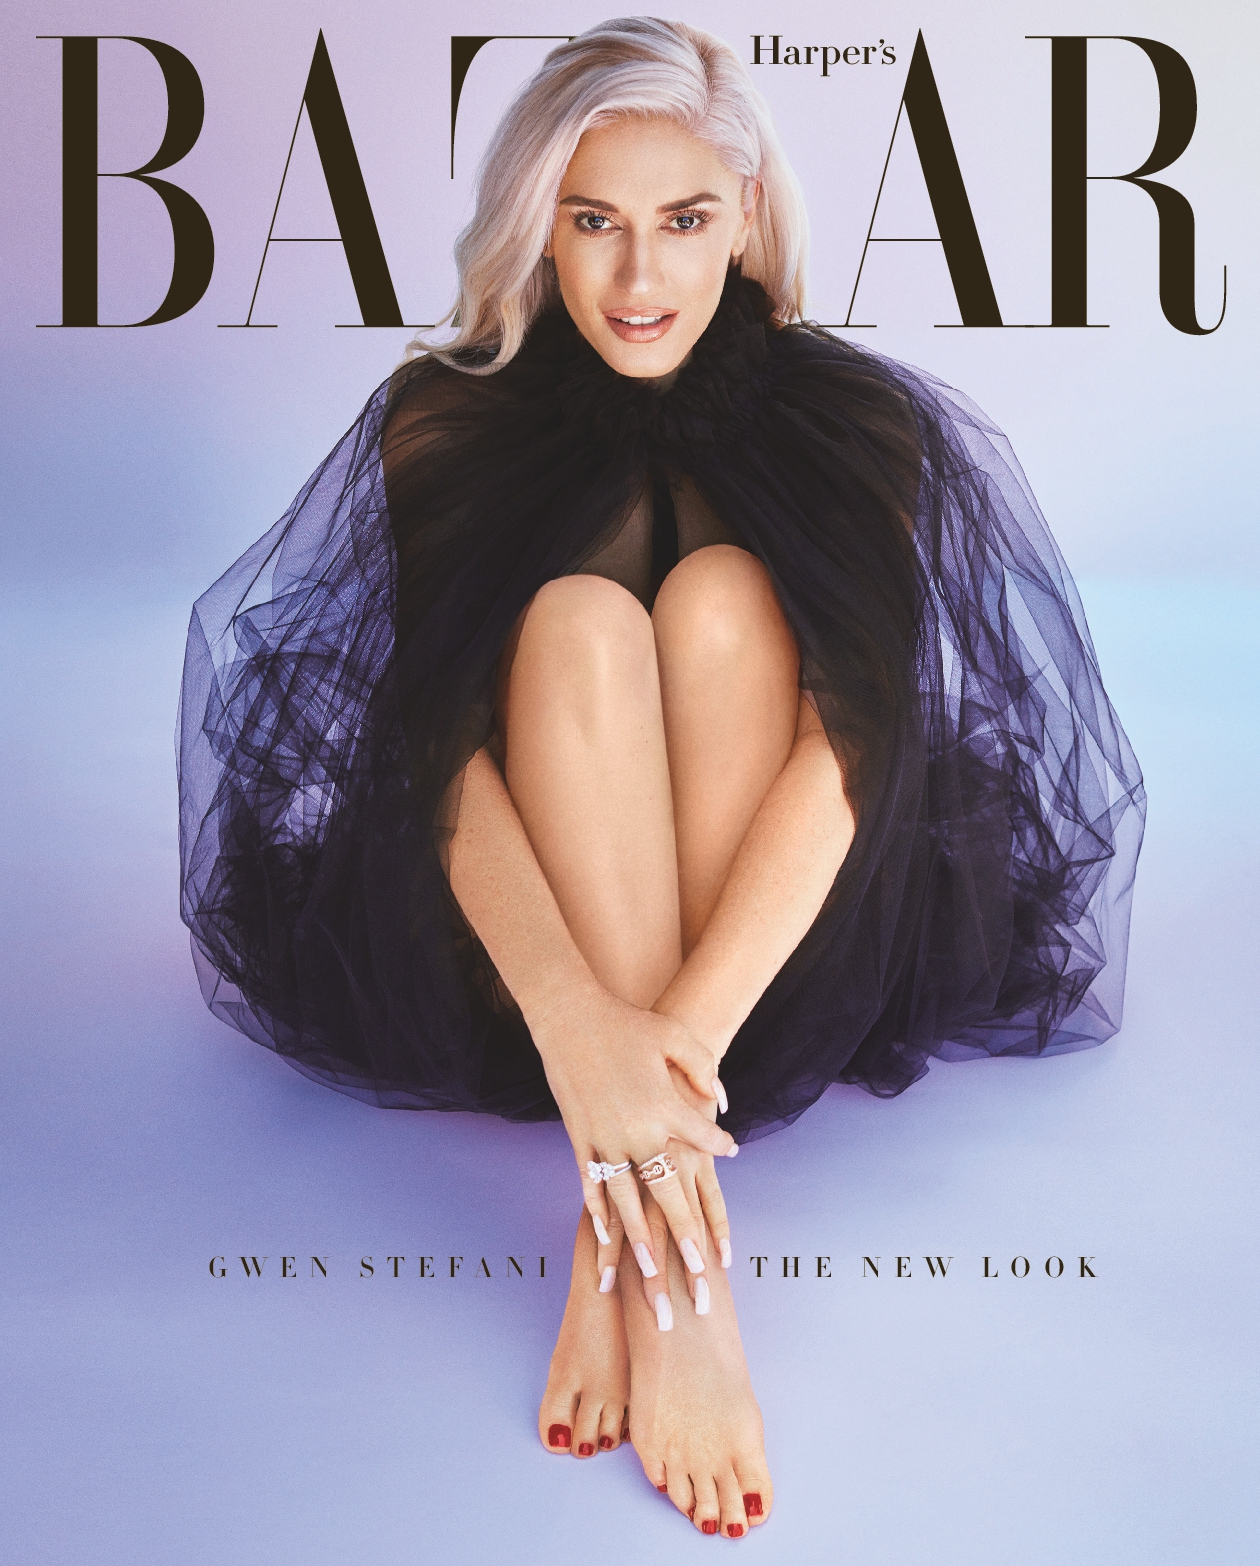 Harper's Bazaar - "Gwen Stefani: The New Look," August